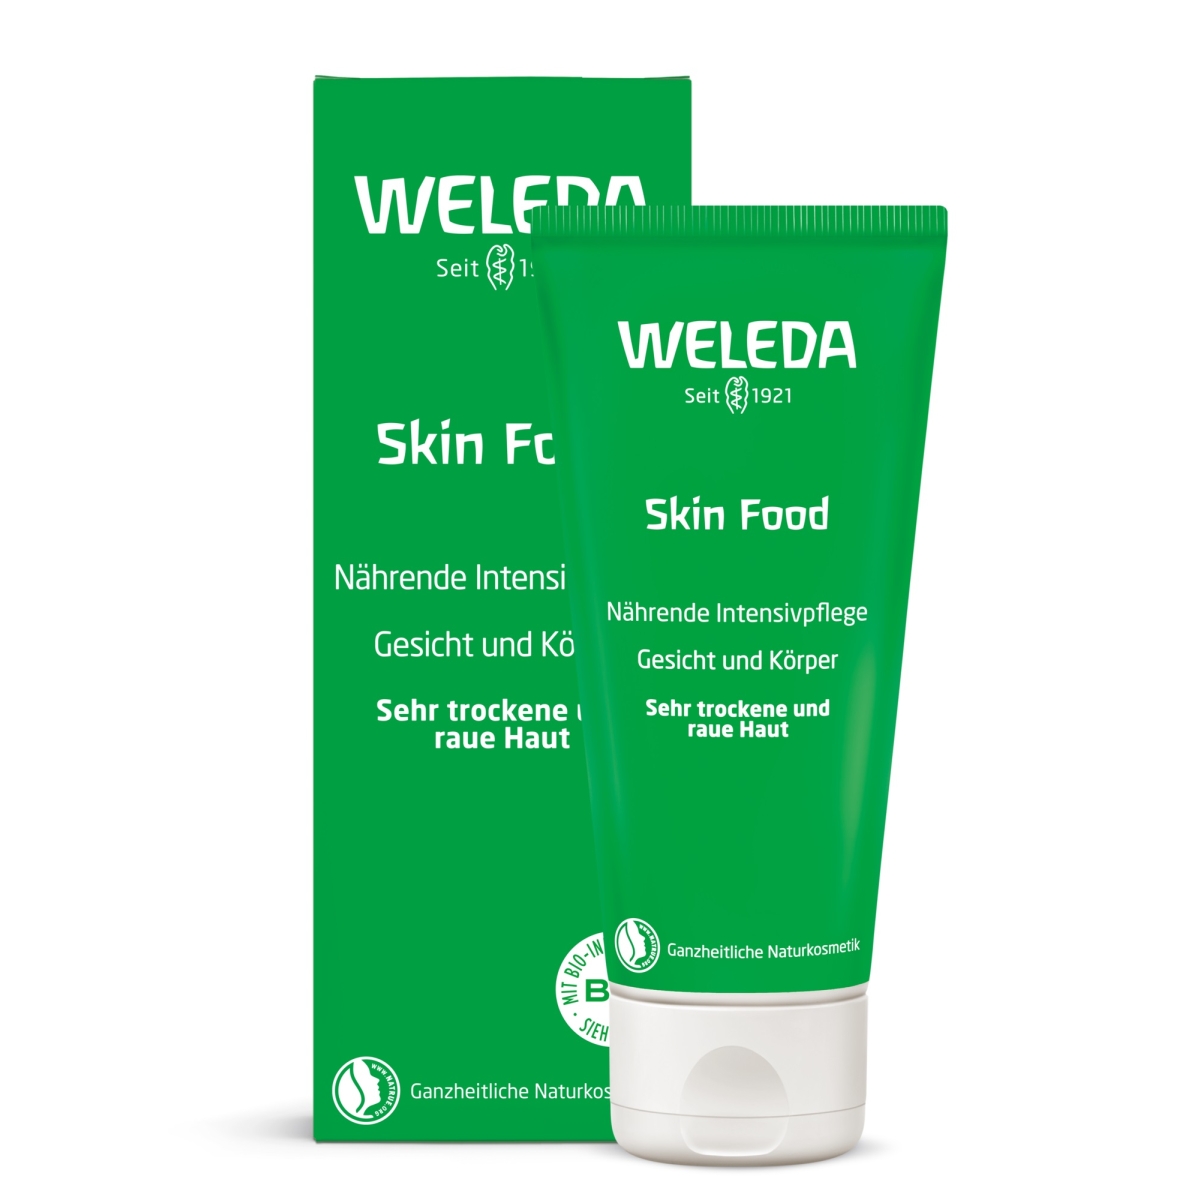 WELEDA Skin Food krēms ļoti sausai un raupjai sejas un ķermeņa ādai, 7